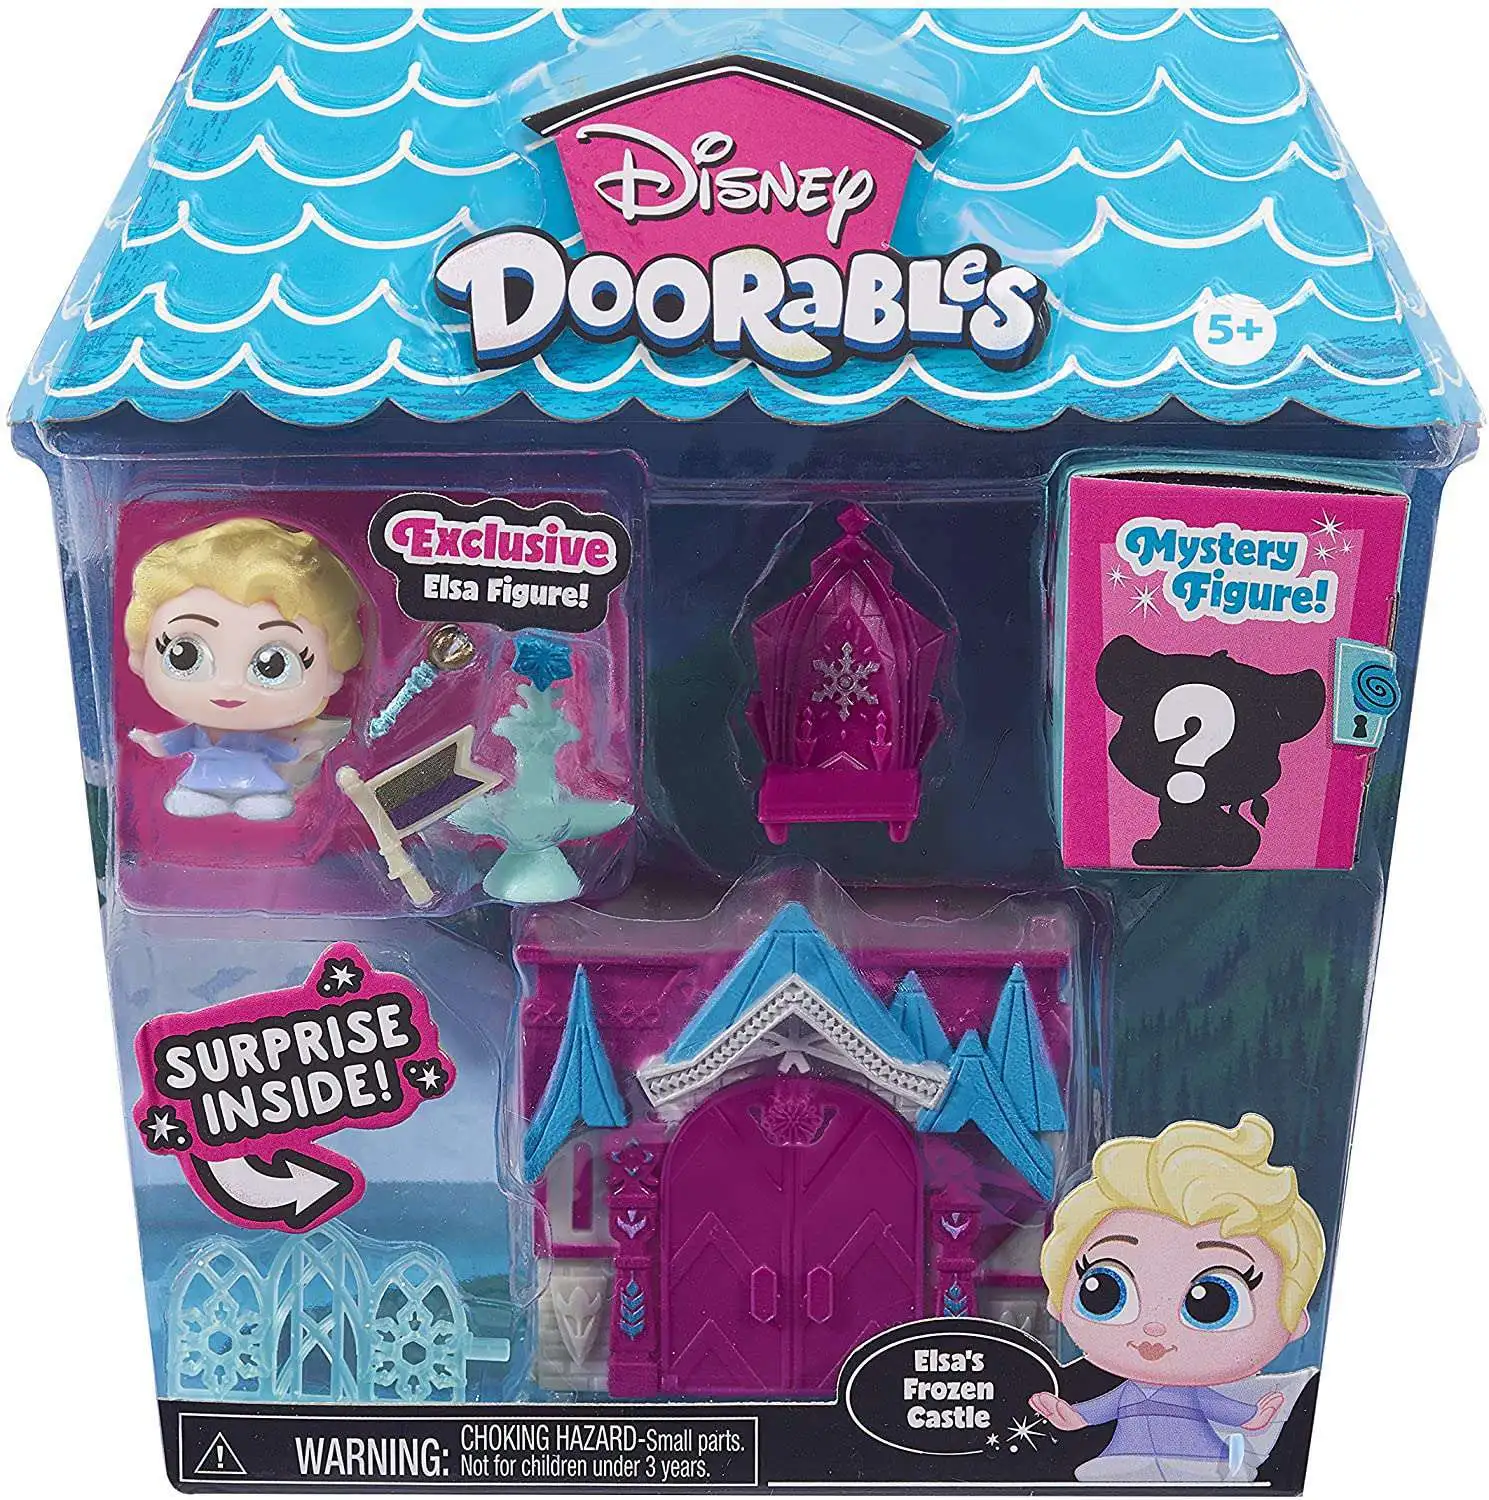 Disney Doorables Elsa's Frozen Castle Mini Playset